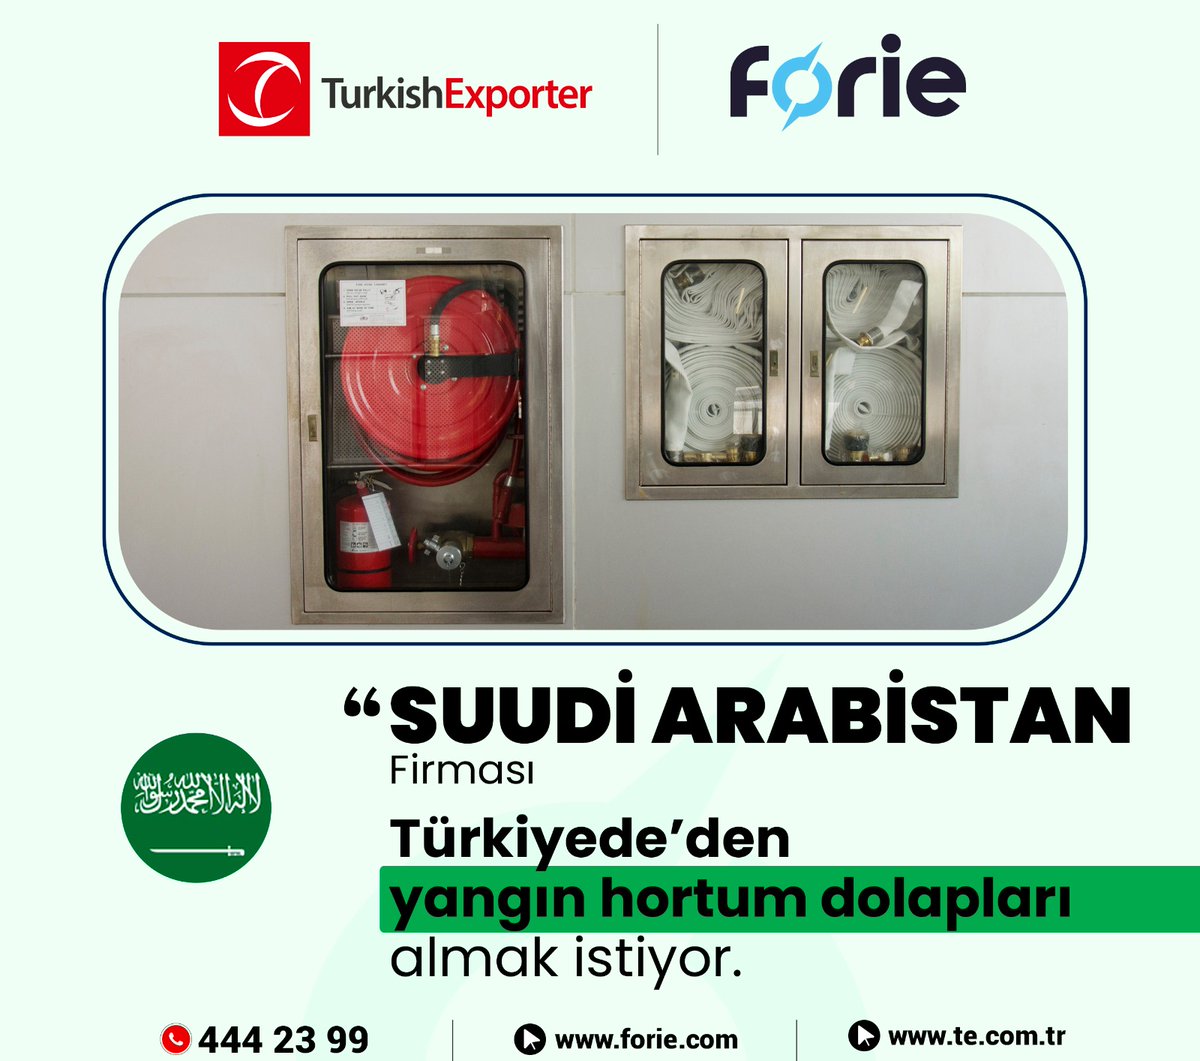 Suudi Arabistan firması, Türkiye'den yangın hortum dolapları almak istiyor

📌 t.ly/88gN 

#ihracat #ithalat #export #import